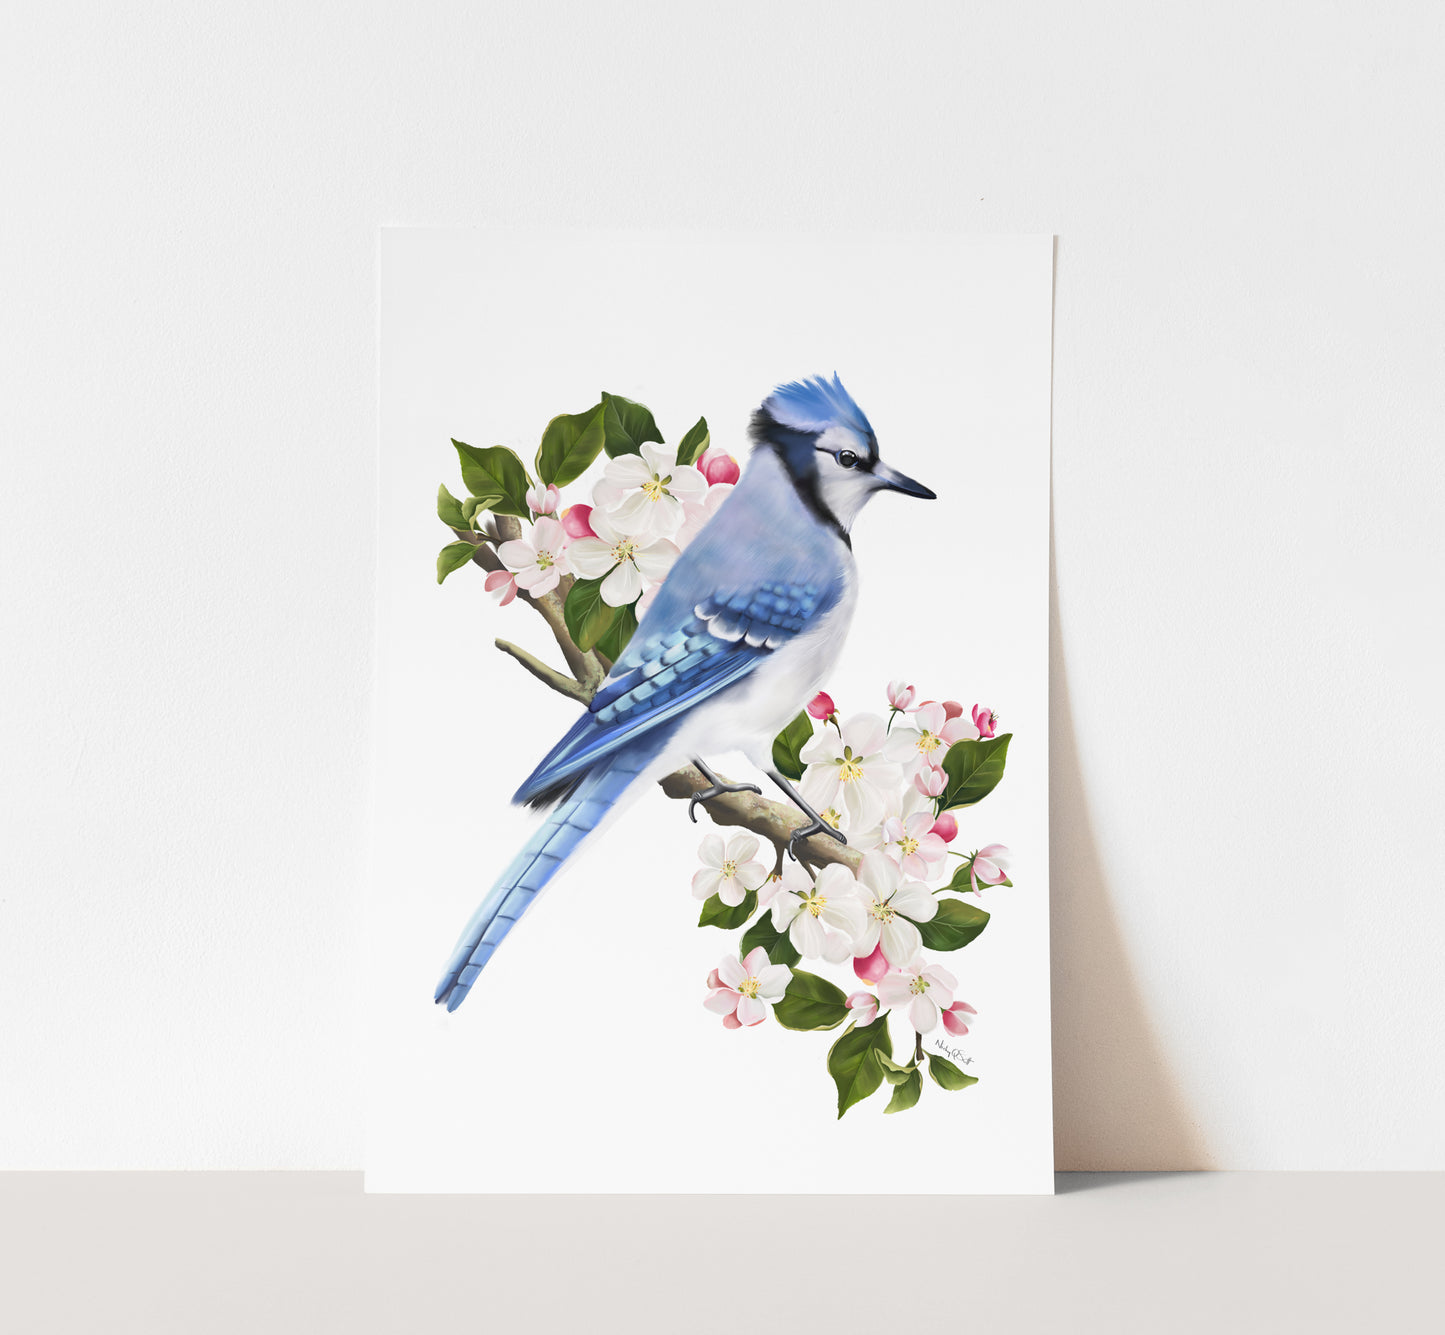 Blue Jay Bird on Apple Blossom Branch Art Print